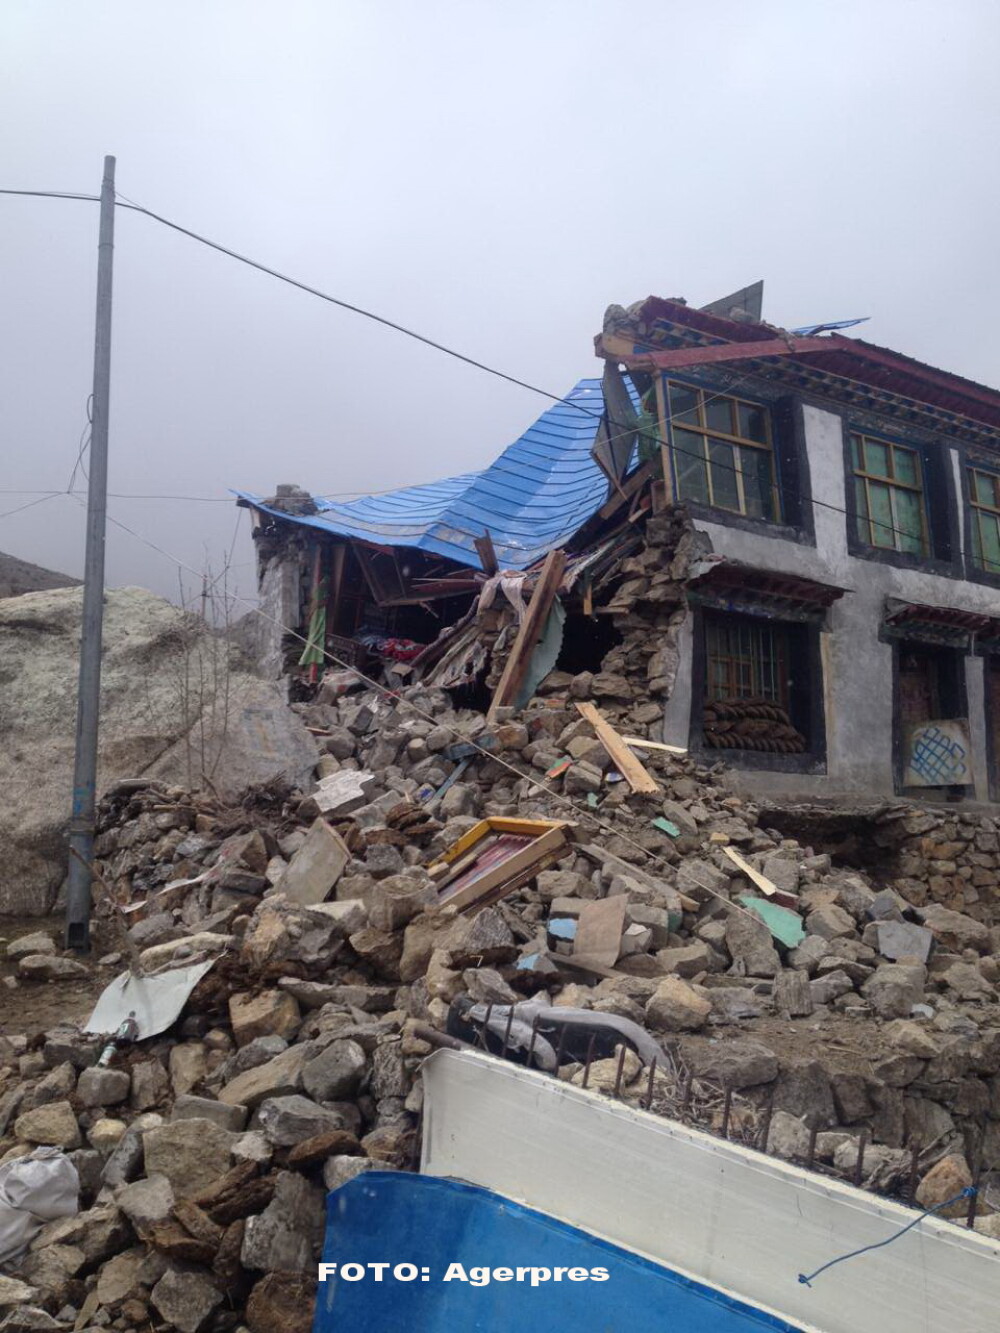 Cladiri istorice distruse, drumuri inchise si sute de morti. GALERIE FOTO cu urmarile devastatoare ale cutremurului din Nepal - Imaginea 2